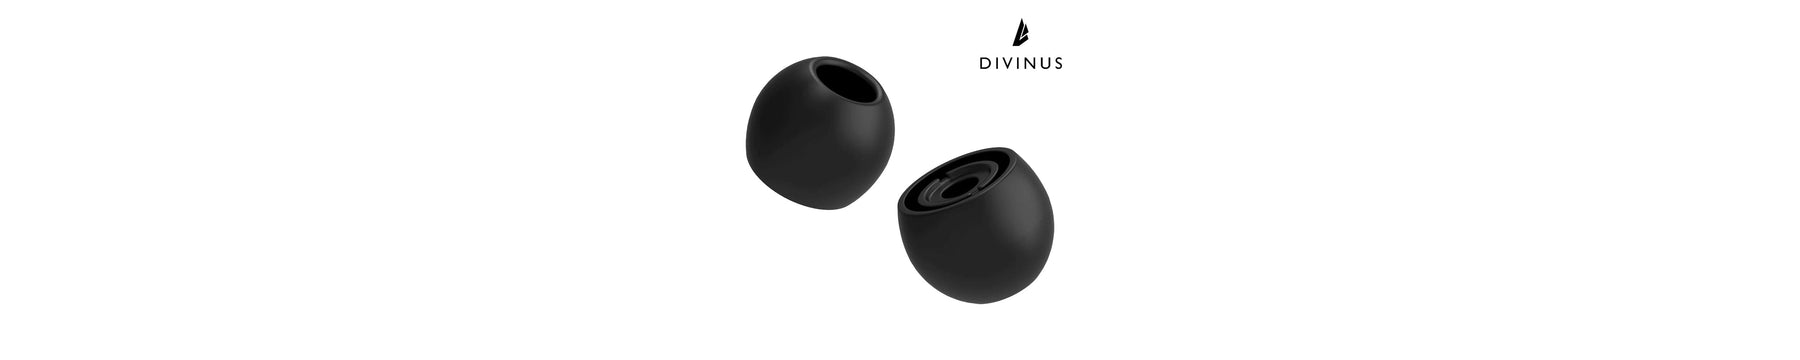 DIVINUS Velvet High-Quality Comfortable Ear Tips